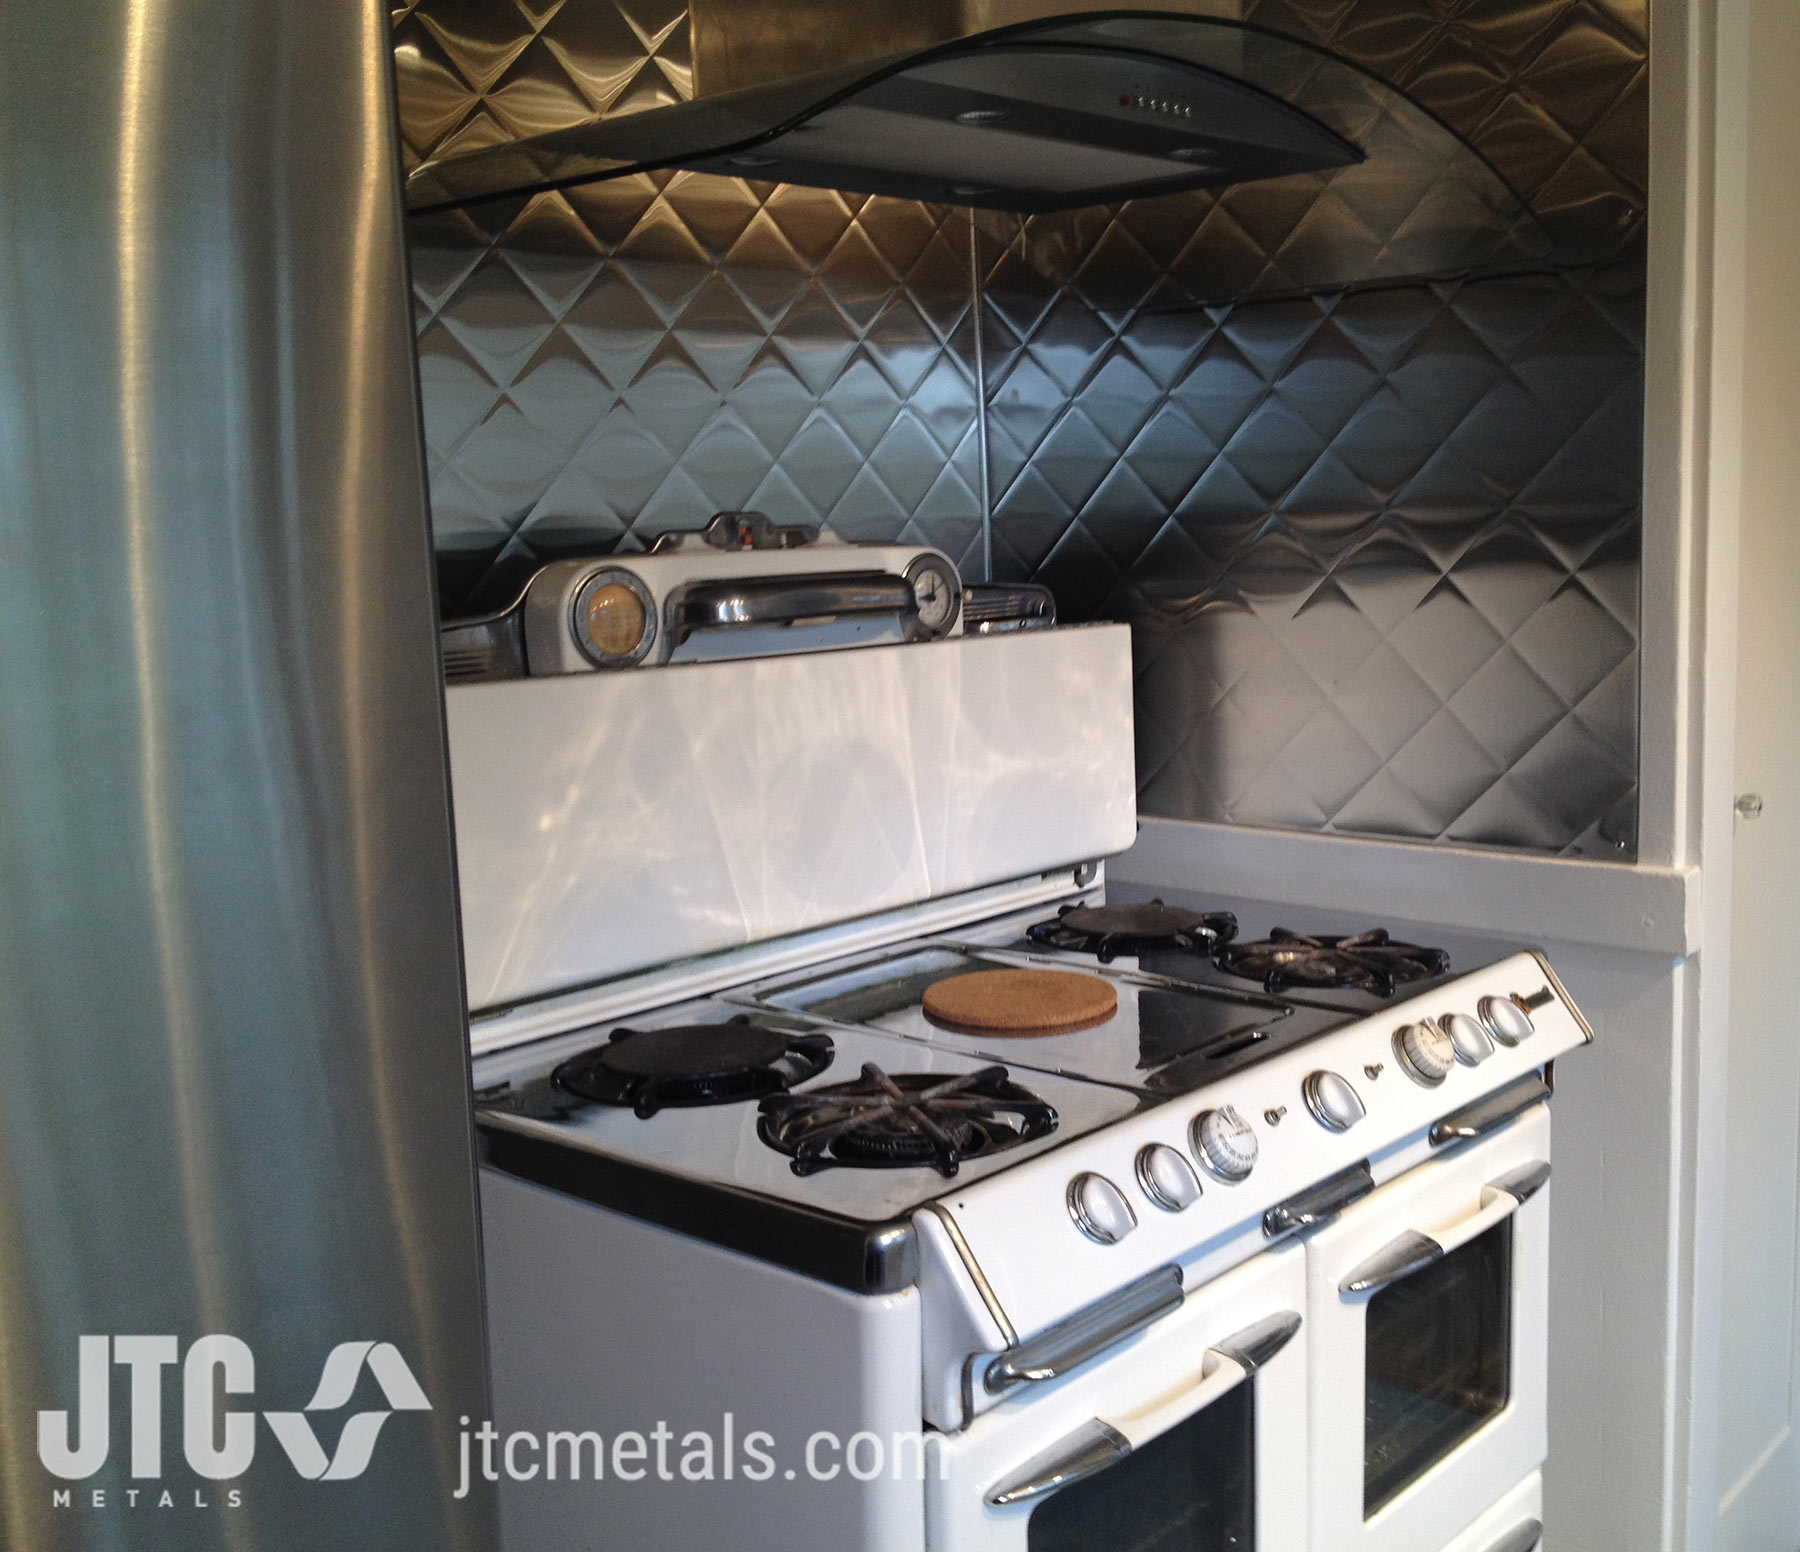 Stainless Steel Kitchen Backsplash - JTC Metals